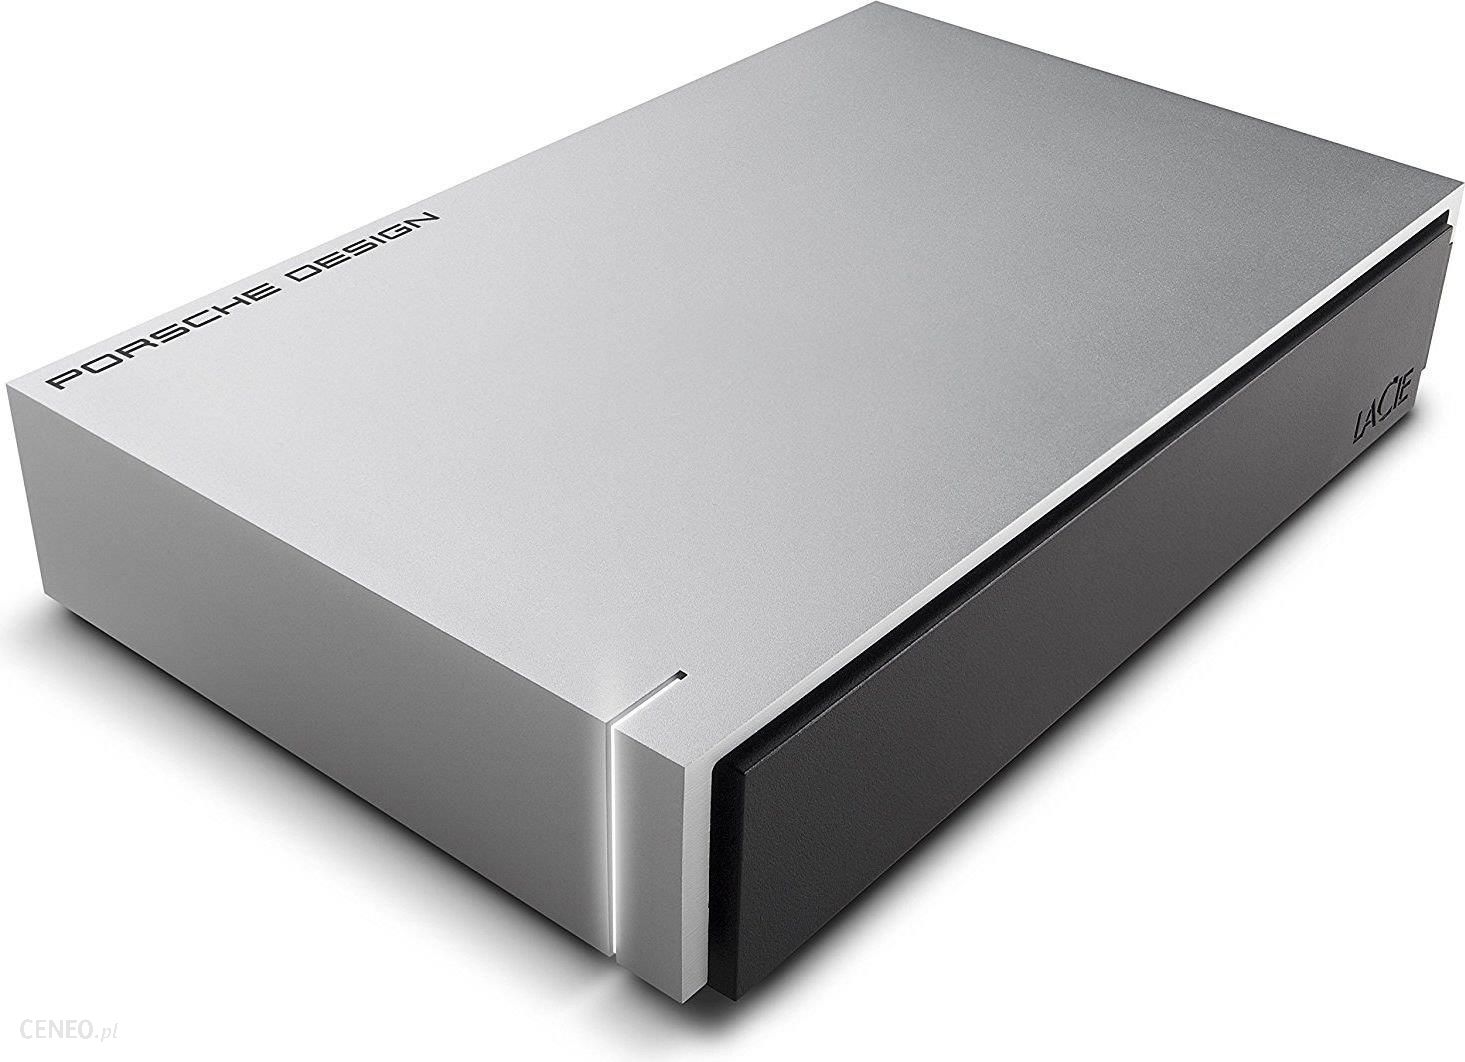 Dysk zewnętrzny LaCie Porsche Design for Mac, 6TB USB 3.0